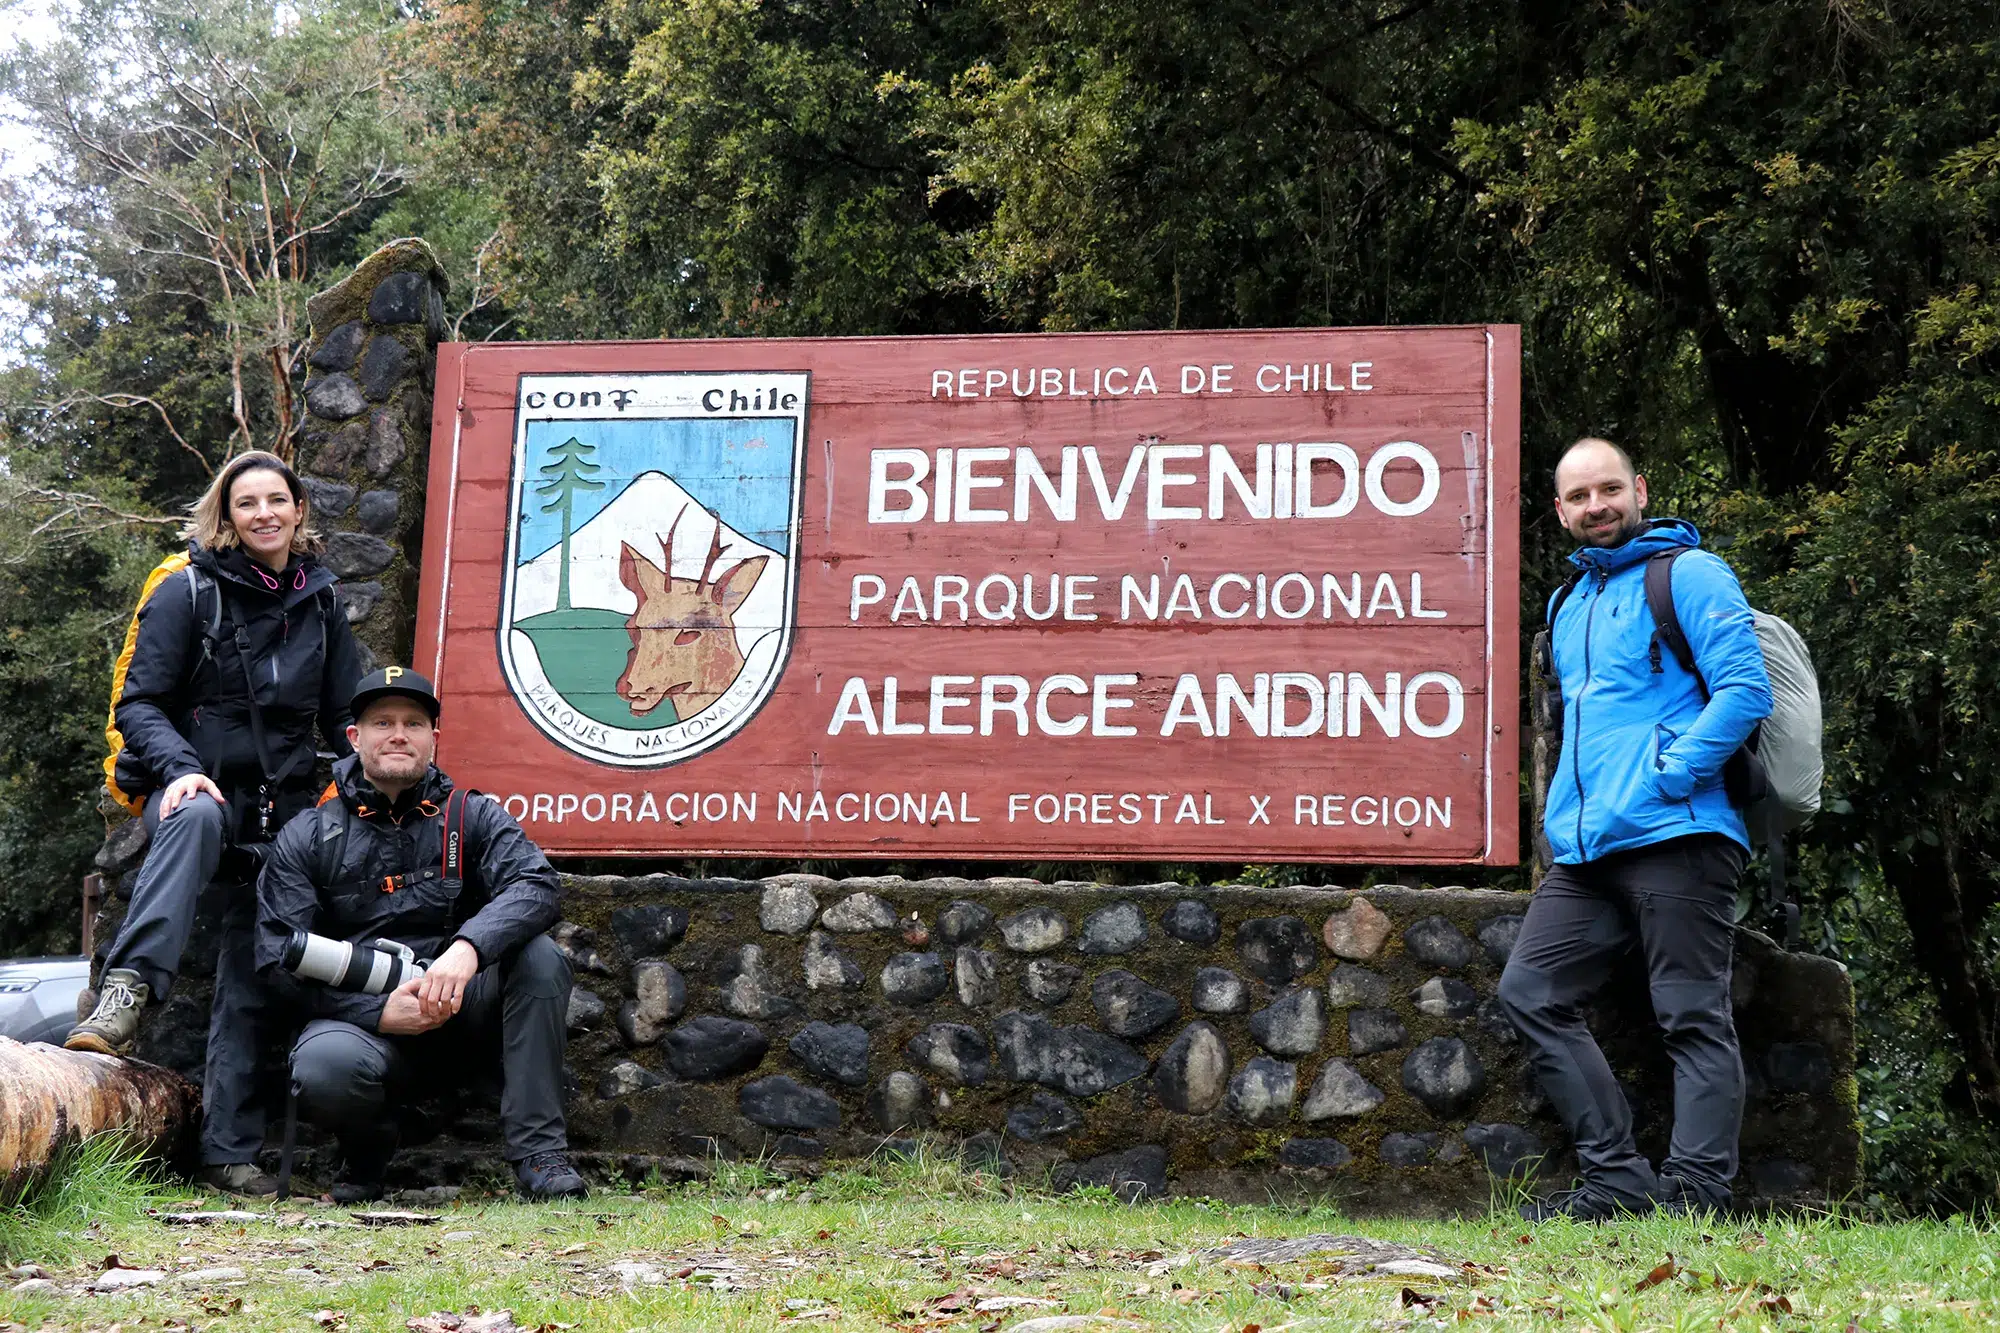 Carretera Austral, Chili - Parque Nacional Alerce Andino - Sendero Laguna Triangulo